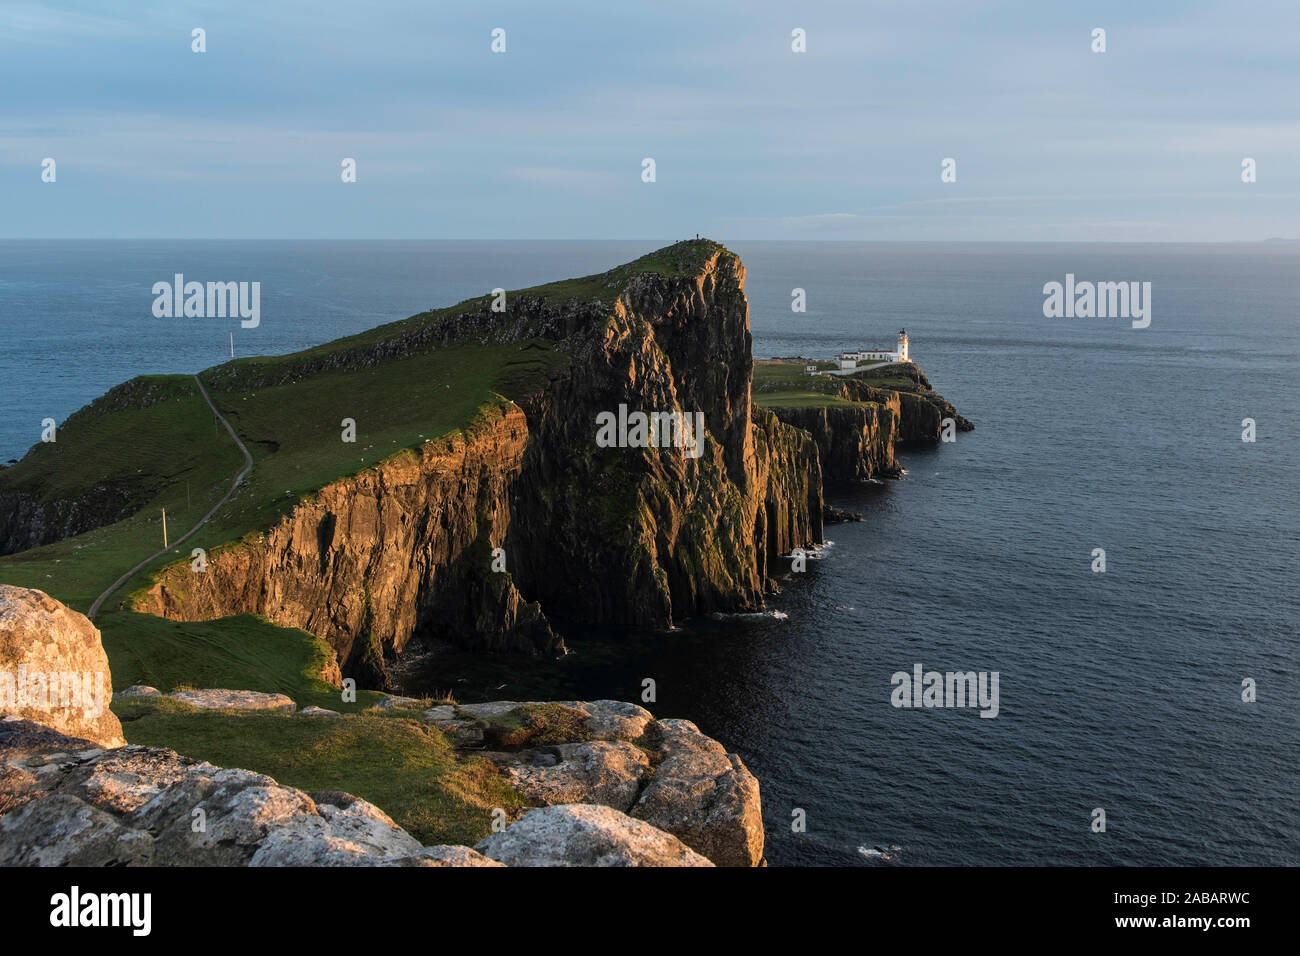 Punto Neist ist eine kleine Halbinsel auf der schottischen Insel Skye und markiert mit ihrem Leuchtturm den westlichsten Punkt der Insel. Foto Stock